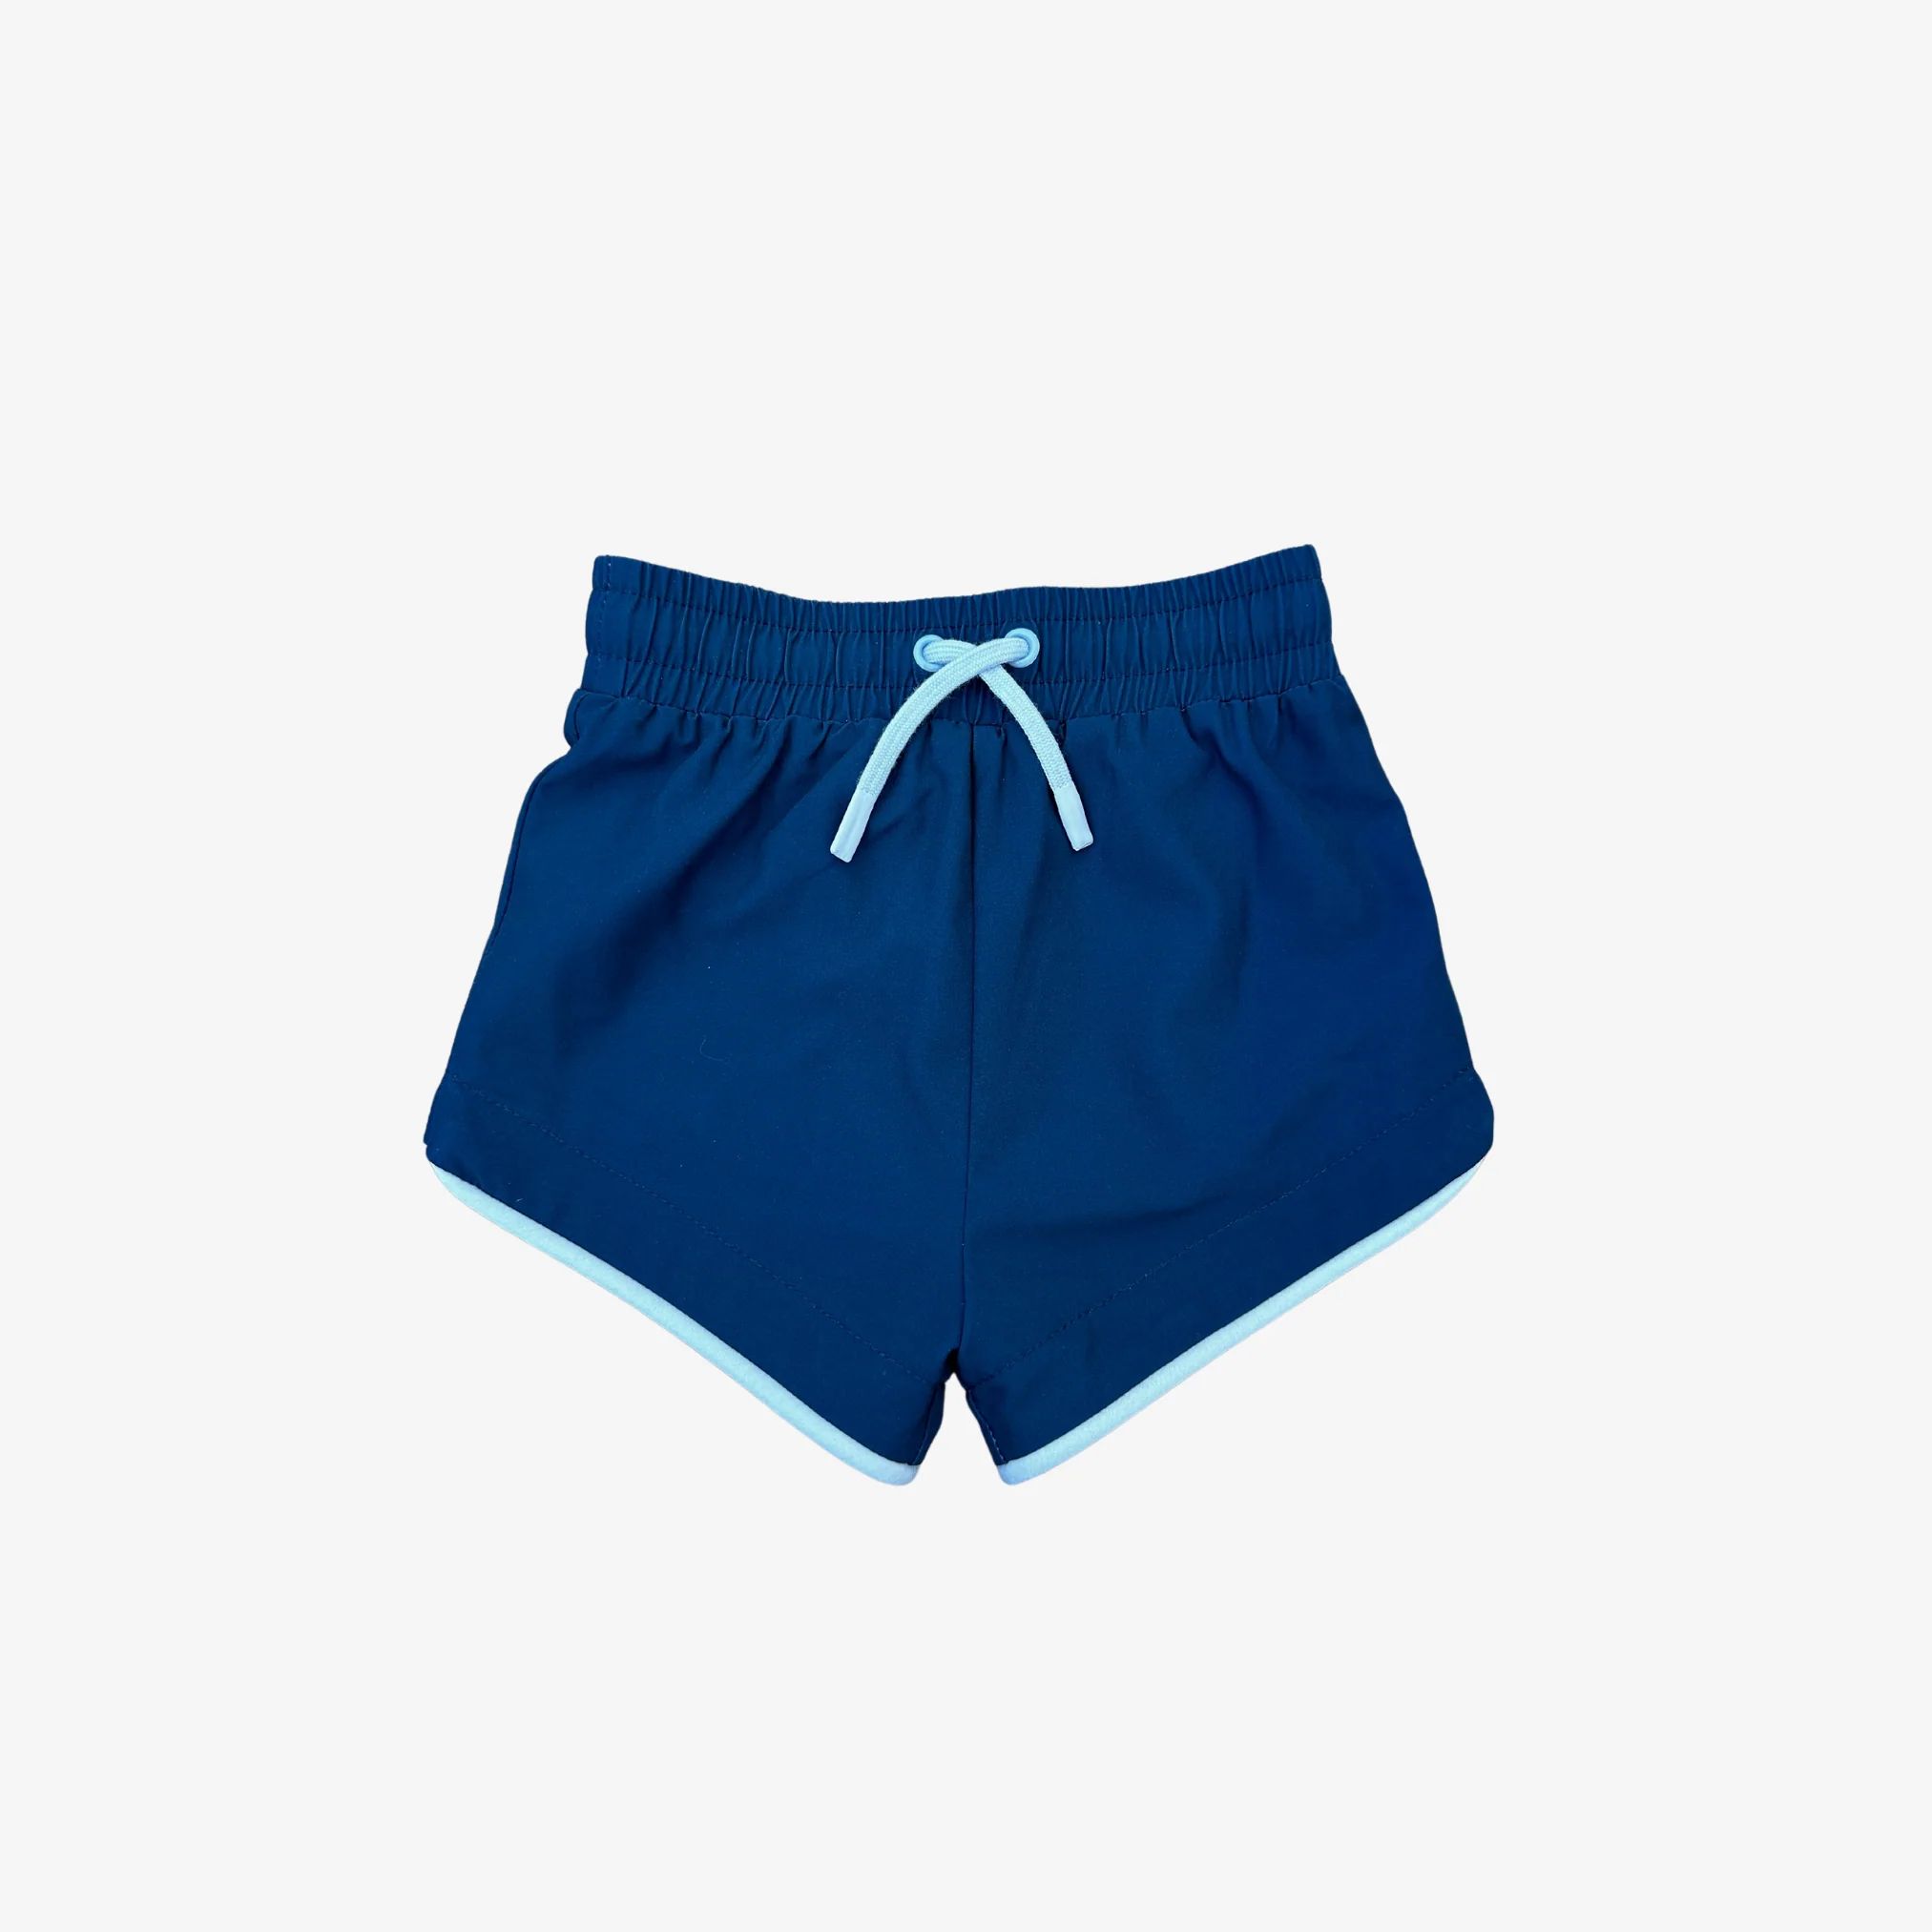 Seaside Short - Navy/Blue | Boys Swimwear | Swim Trunks | Ollie's Day